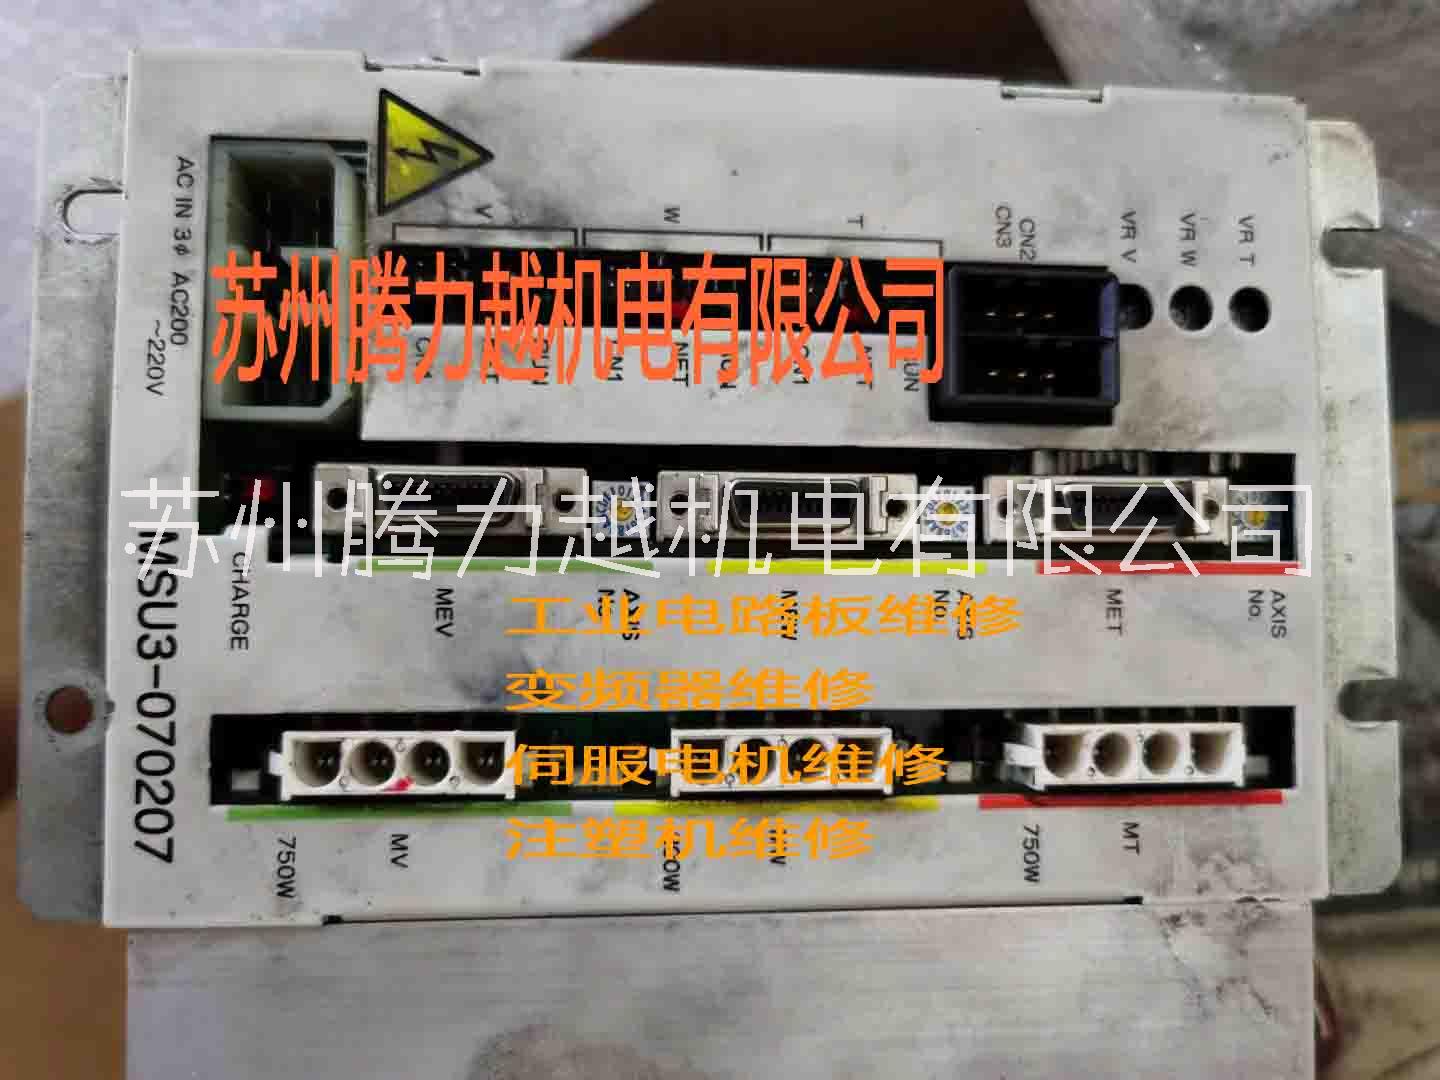 上海注塑机维修翻新改造电路板维修伺服电机变频器维修图片